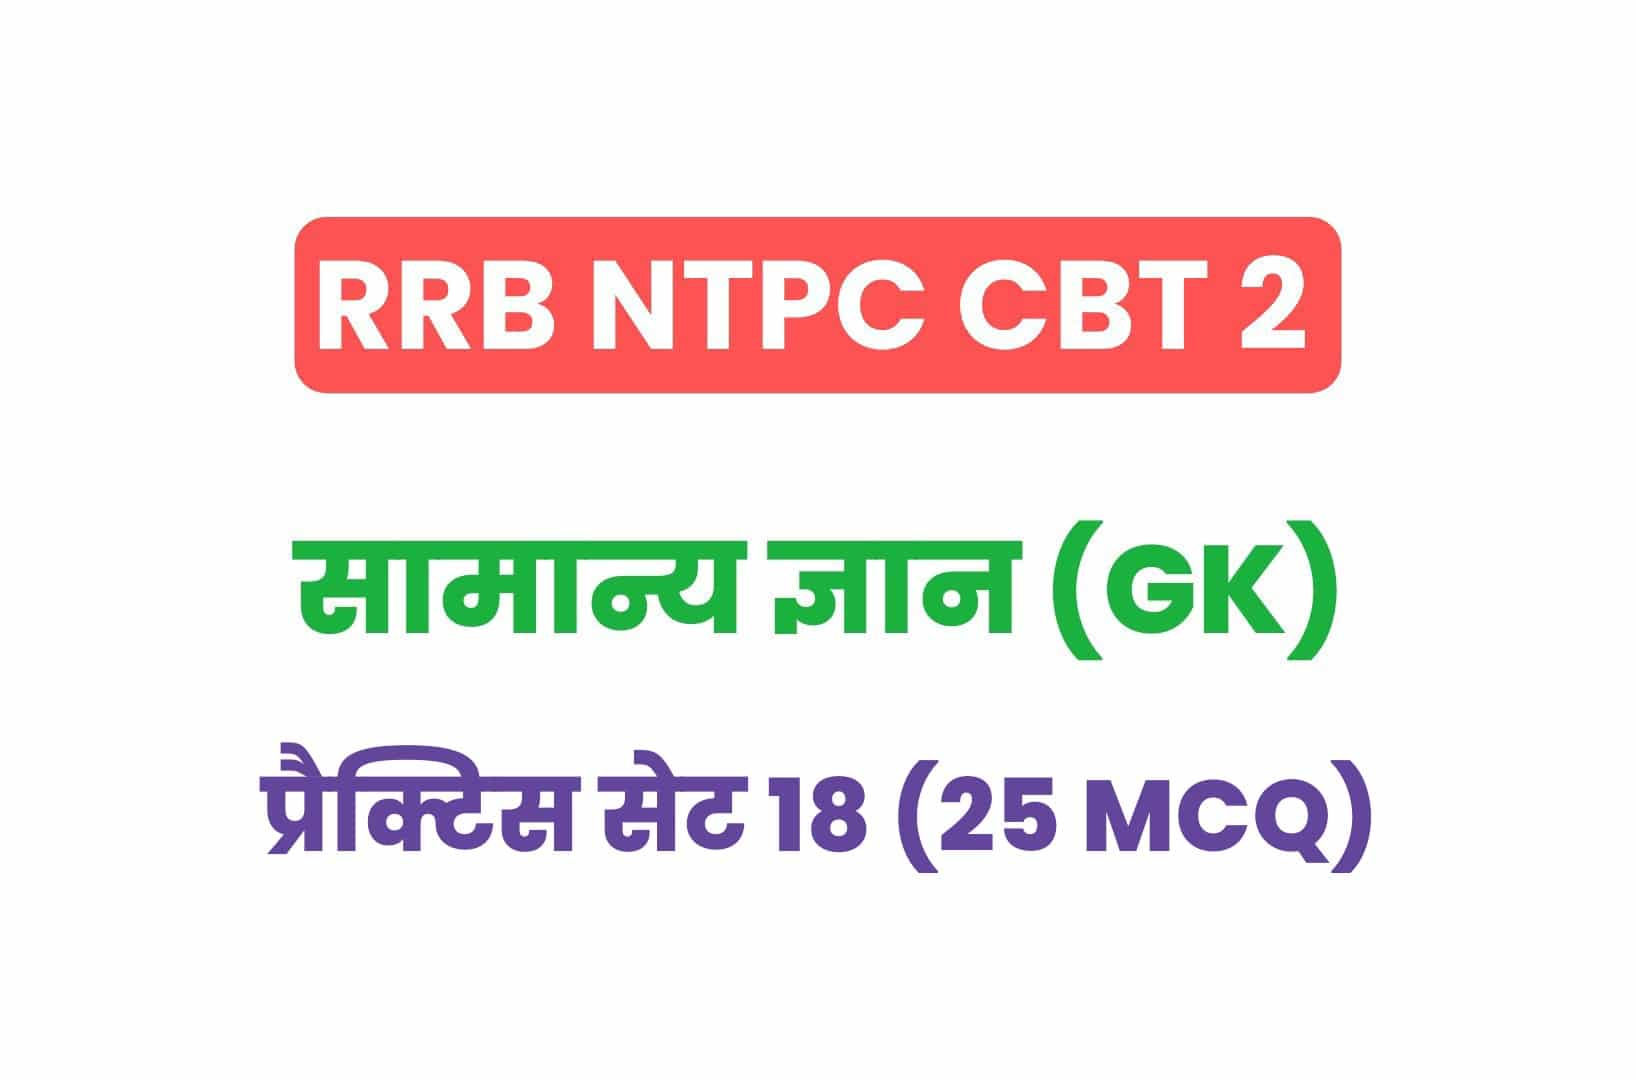 RRB NTPC CBT 2 GK प्रैक्टिस सेट 18: सामान्य ज्ञान के महत्वपूर्ण प्रश्नों का संग्रह, जरूर देखें